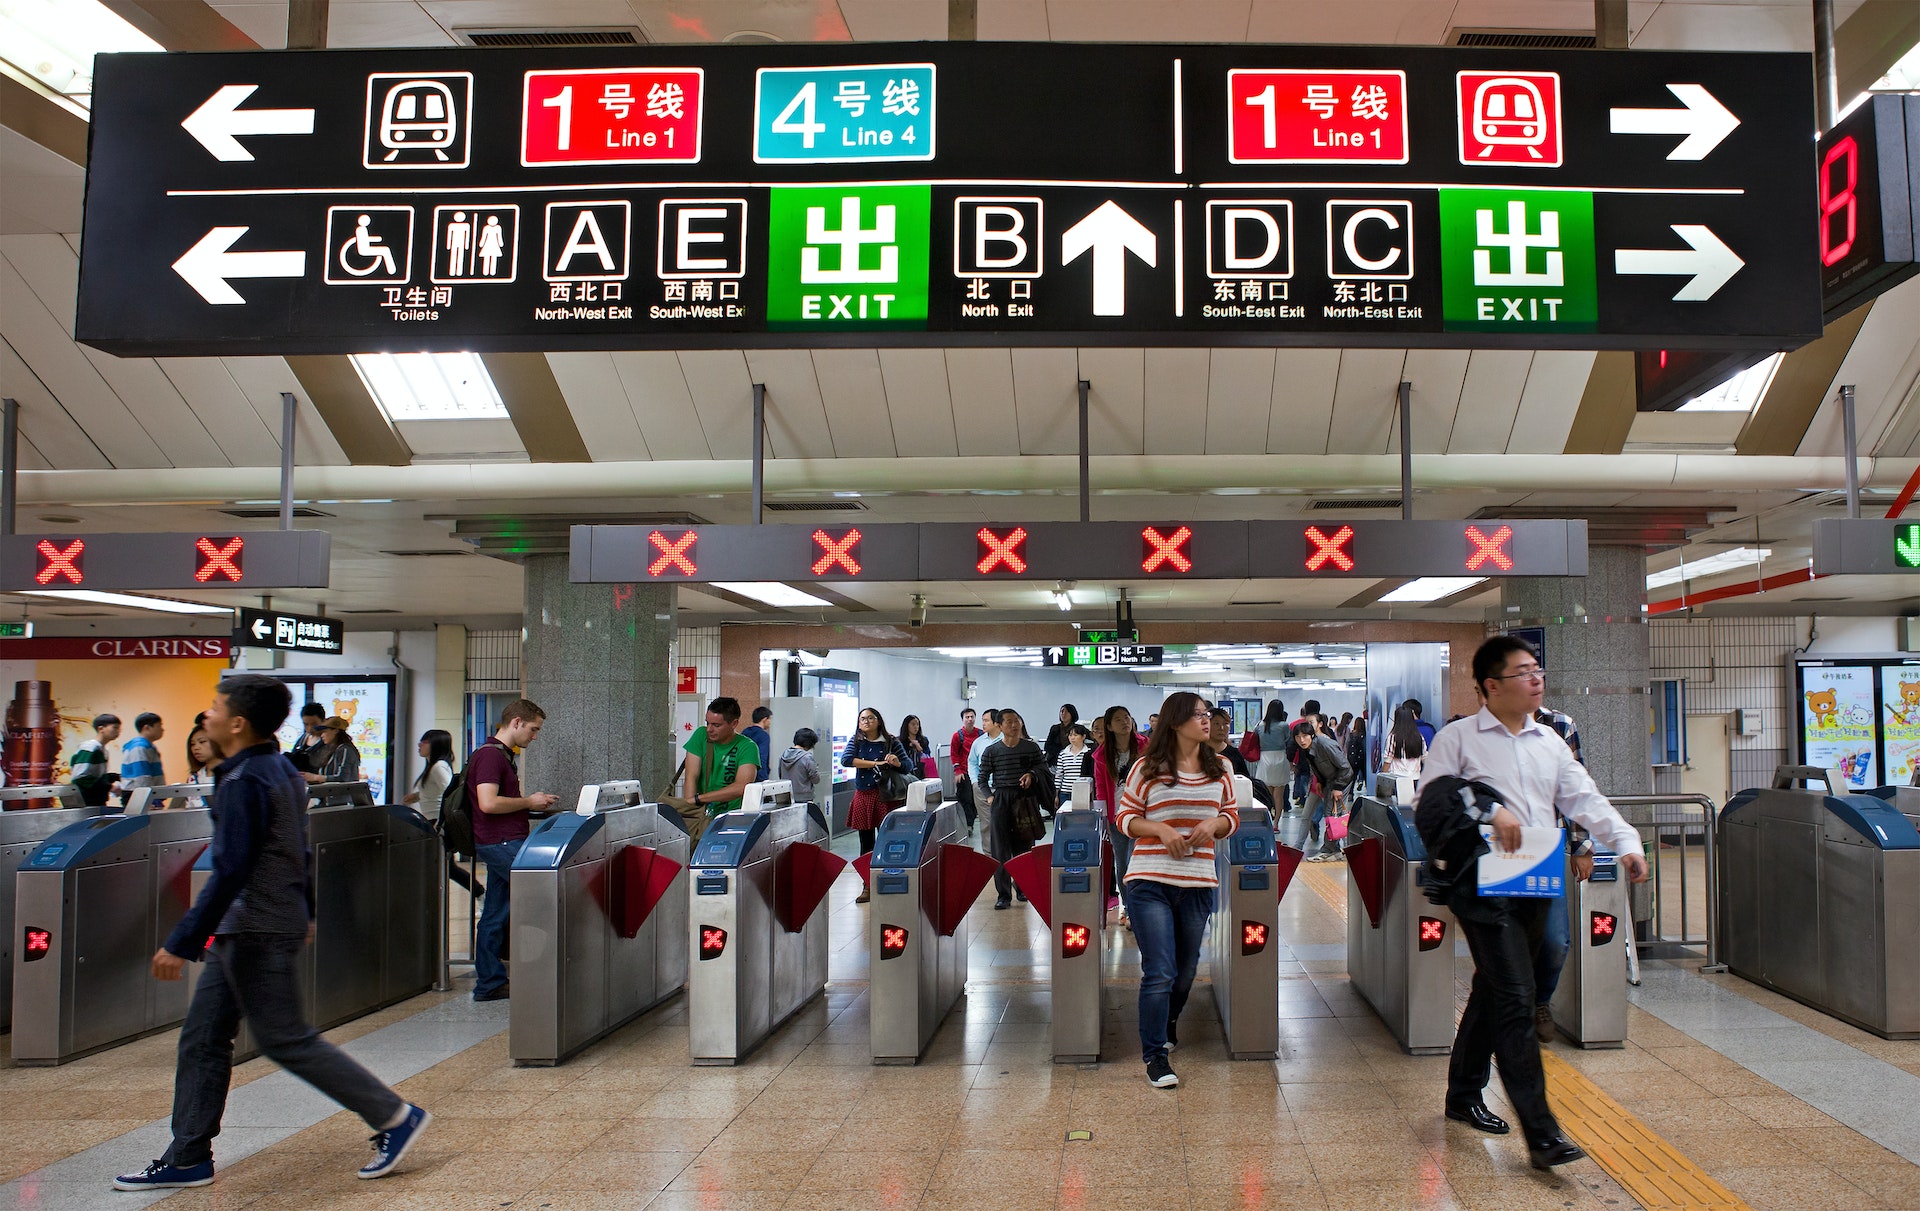 Passagerare på en tunnelbanestation i Peking